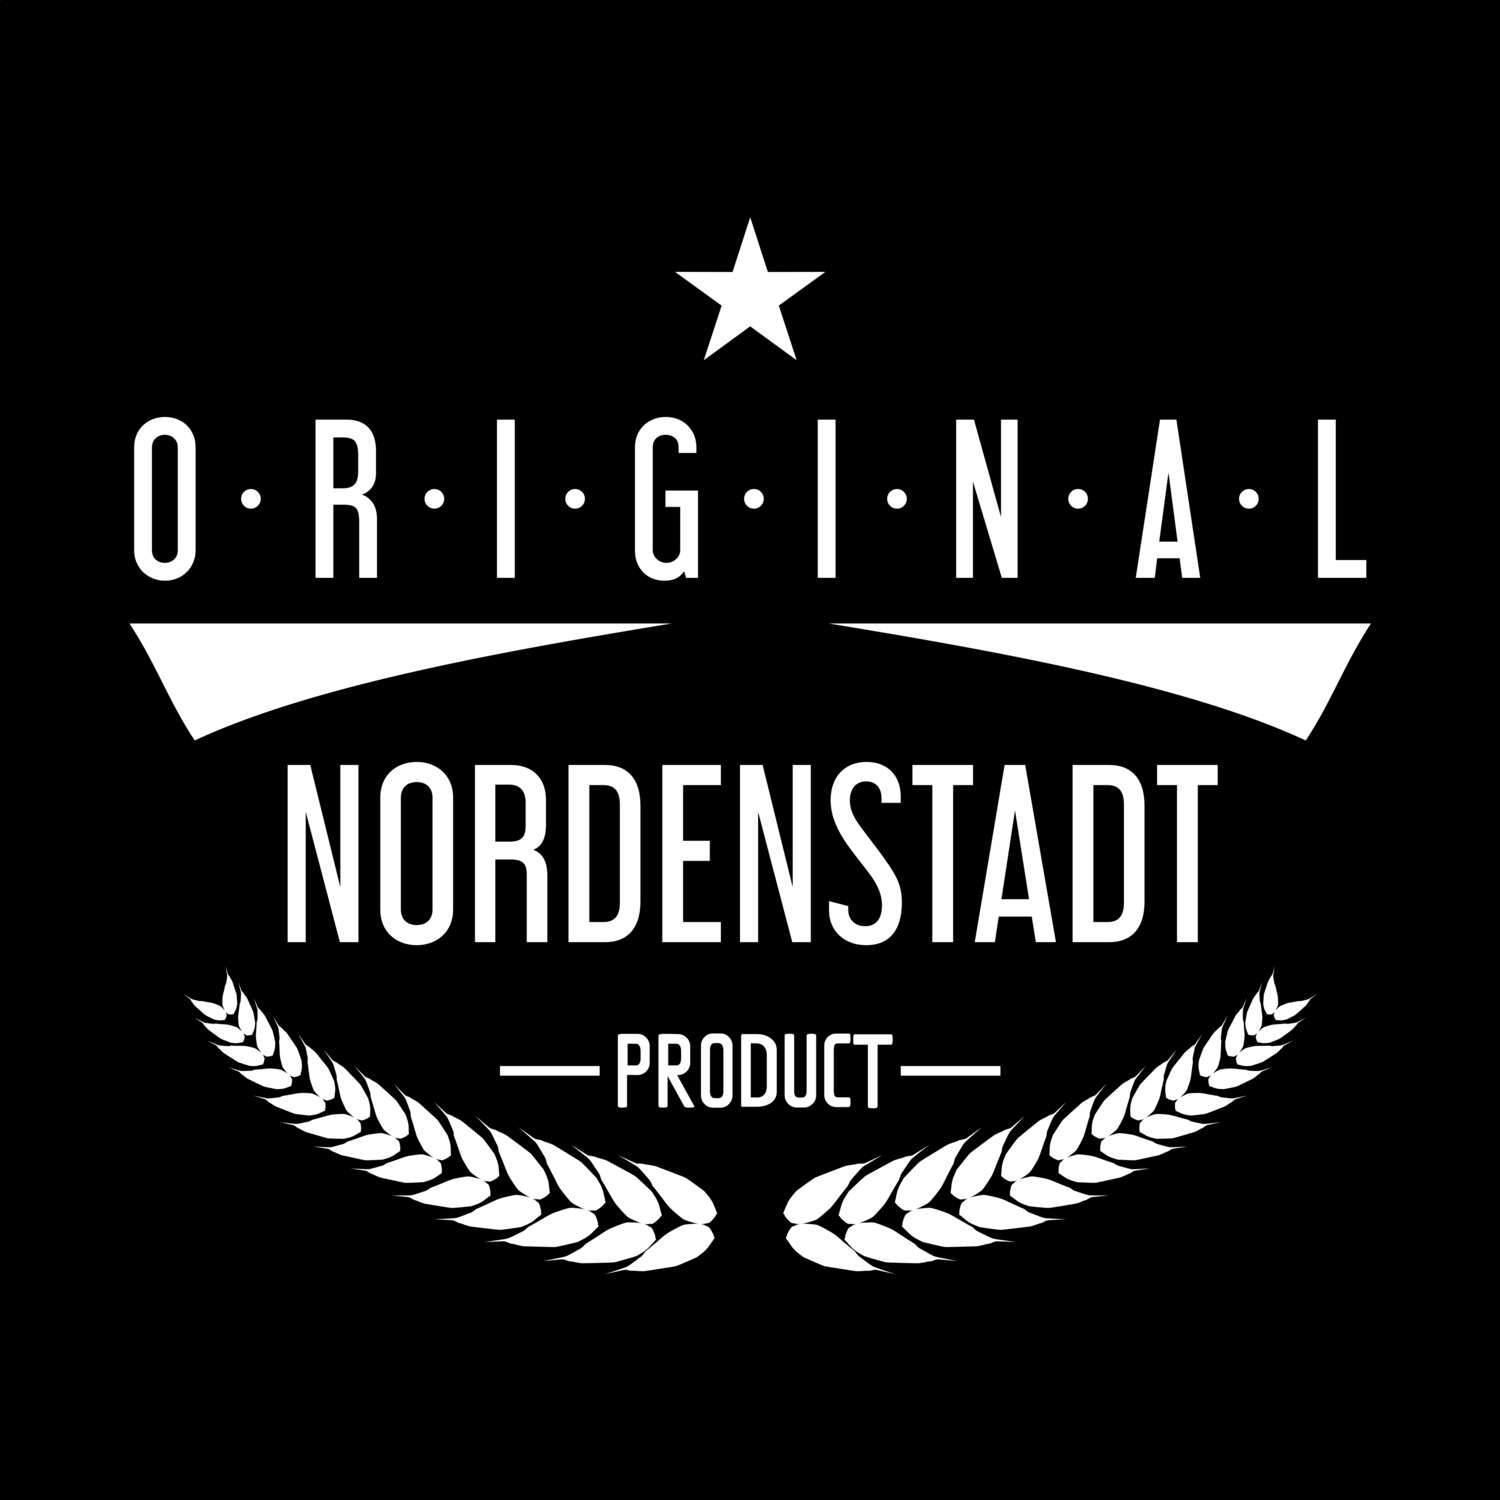 Nordenstadt T-Shirt »Original Product«